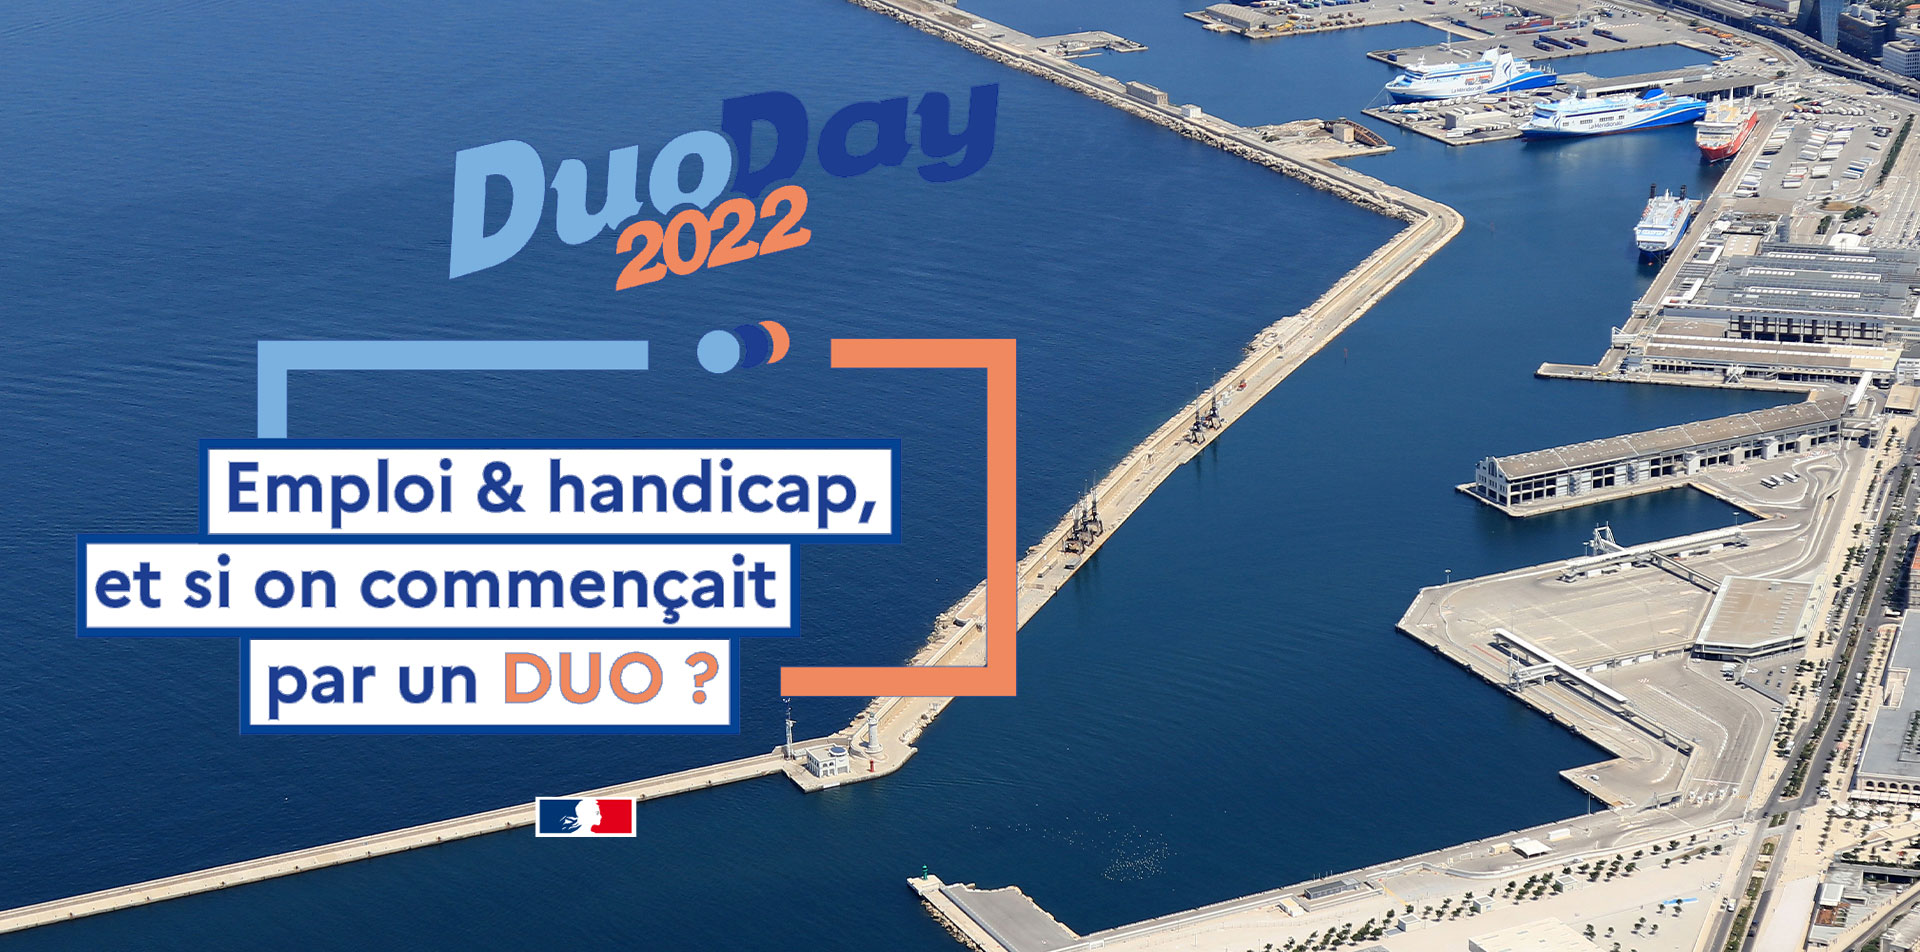 Duo Day 2022 : Le port s’engage pour lutter contre les préjugés sur le handicap au travail.